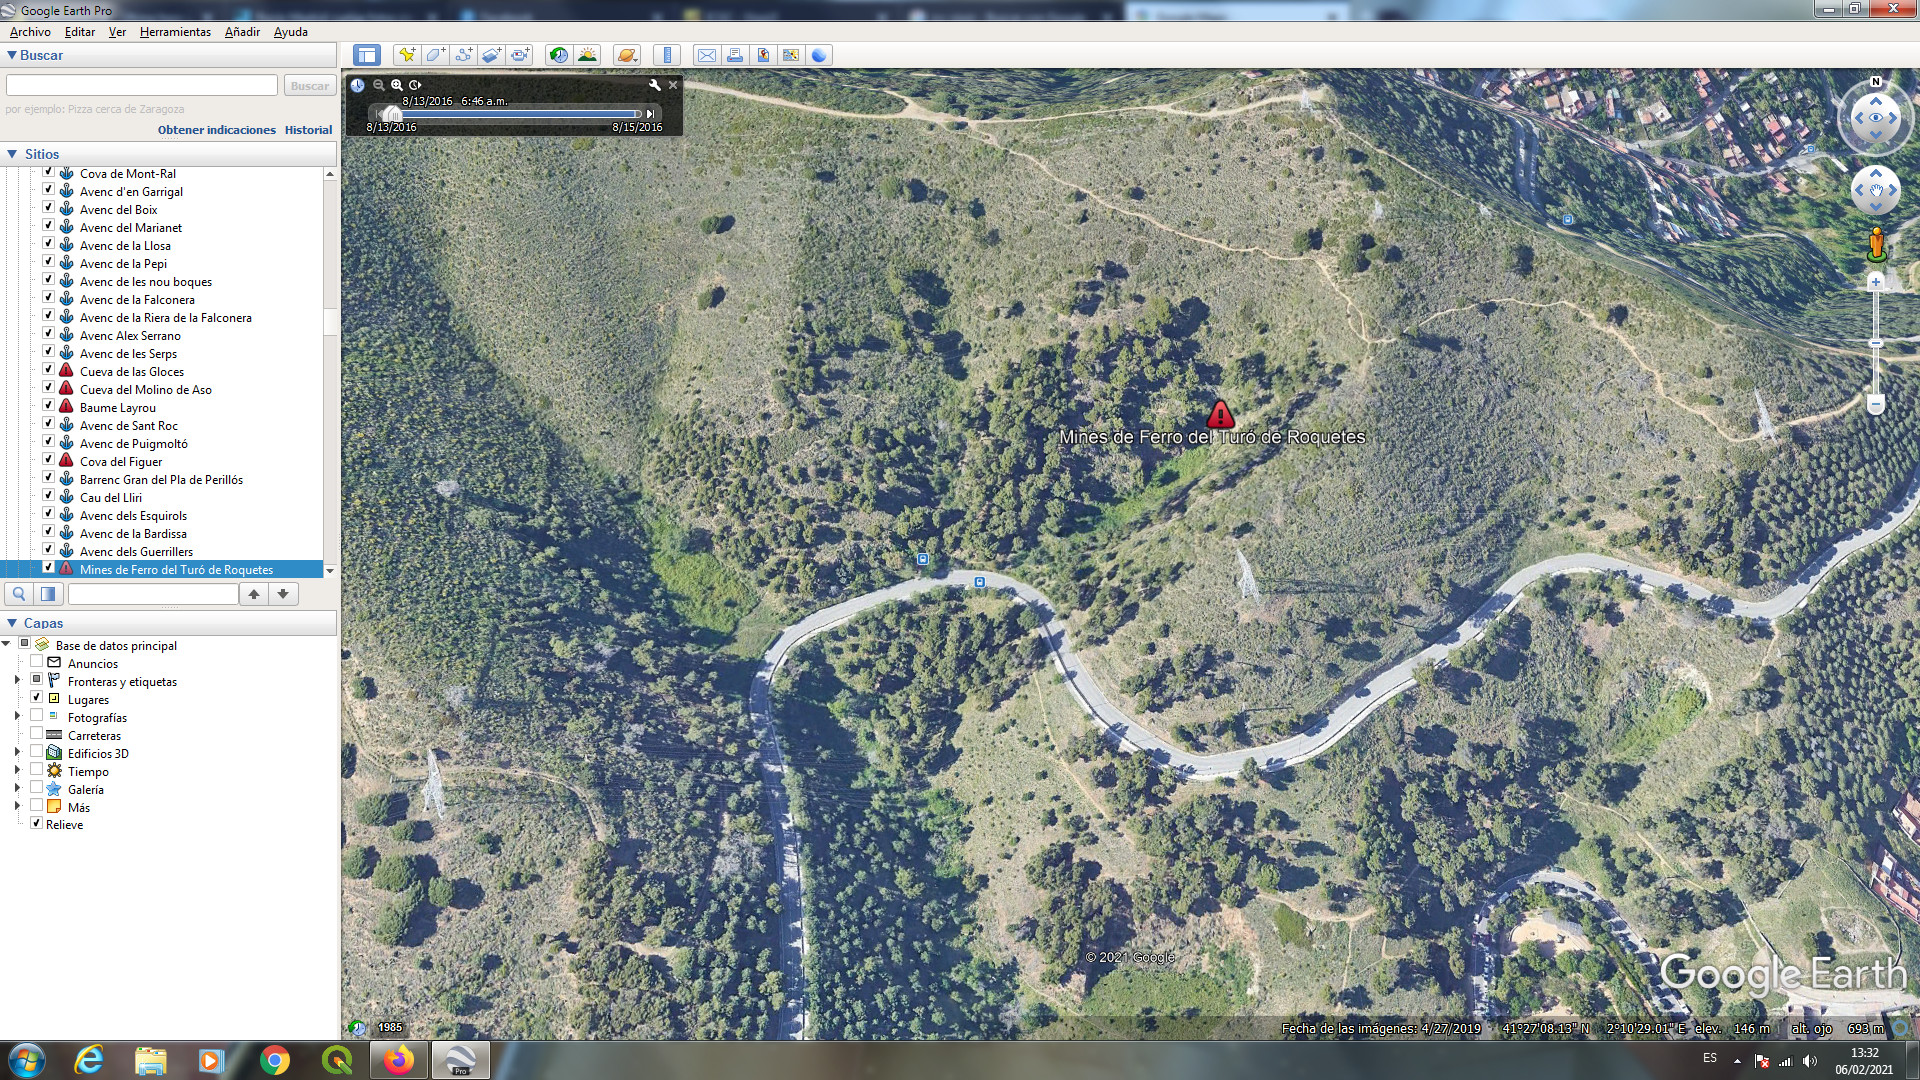 Us deixo la ubicació de la mina més llarga del Turó de Roquetes. Hi ha altres més petites properes, autèntics caus de deixalles. Aquesta farà uns 100 metres.